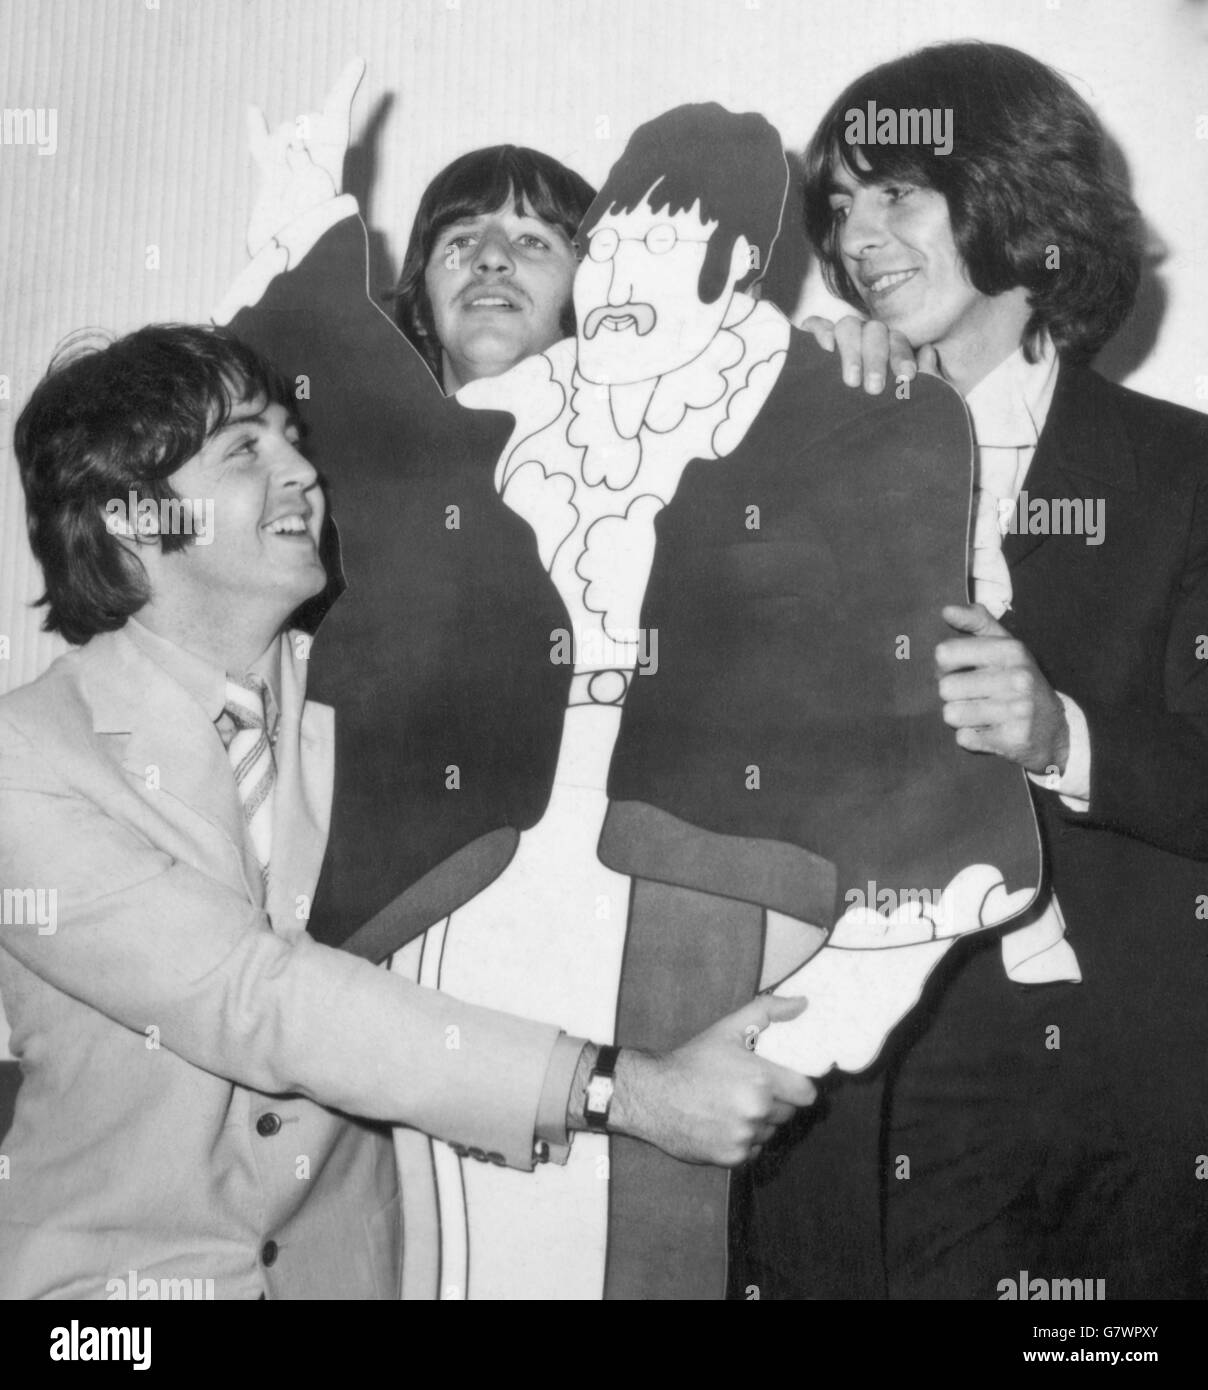 Une caricature grandeur nature coupée de Beatle John Lennon attire l'attention de ses trois compagnons vivants (de gauche à droite) Paul McCartney, Ringo Starr et GEORGE HARRISON lors d'un avant-goût de film de presse de « The Yellow Submarine » à Bowater House, Knightsbridge, Londres. Banque D'Images